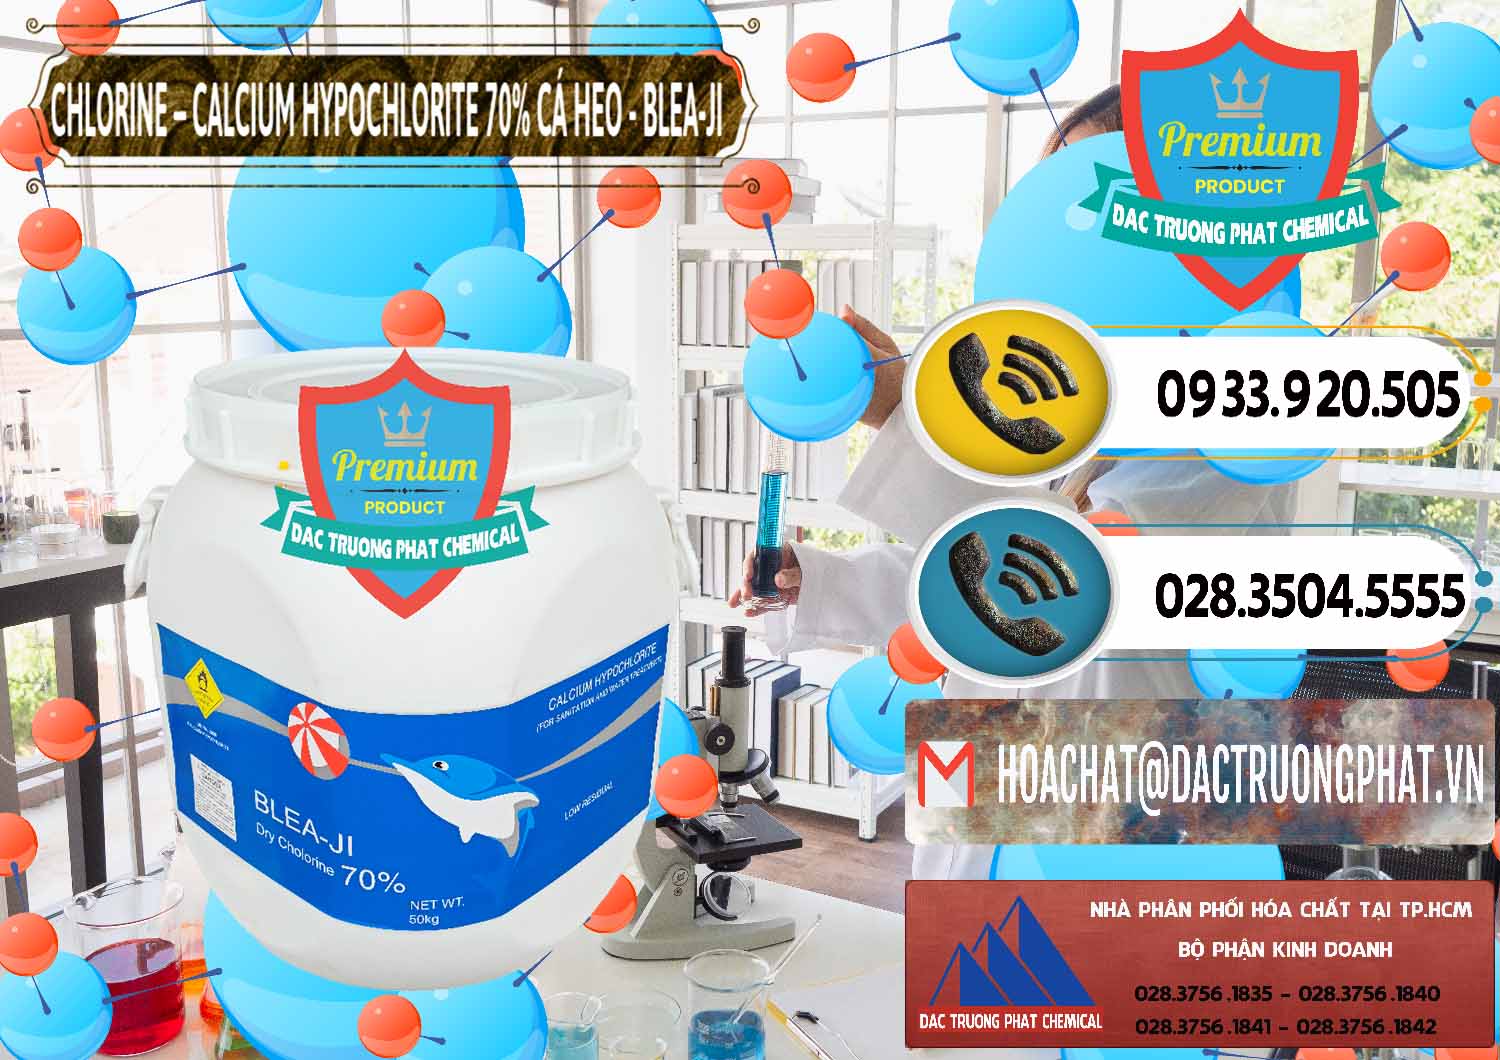 Nhà cung ứng _ bán Clorin - Chlorine Cá Heo 70% Blea-Ji Trung Quốc China - 0056 - Cty cung cấp và bán hóa chất tại TP.HCM - hoachatdetnhuom.vn